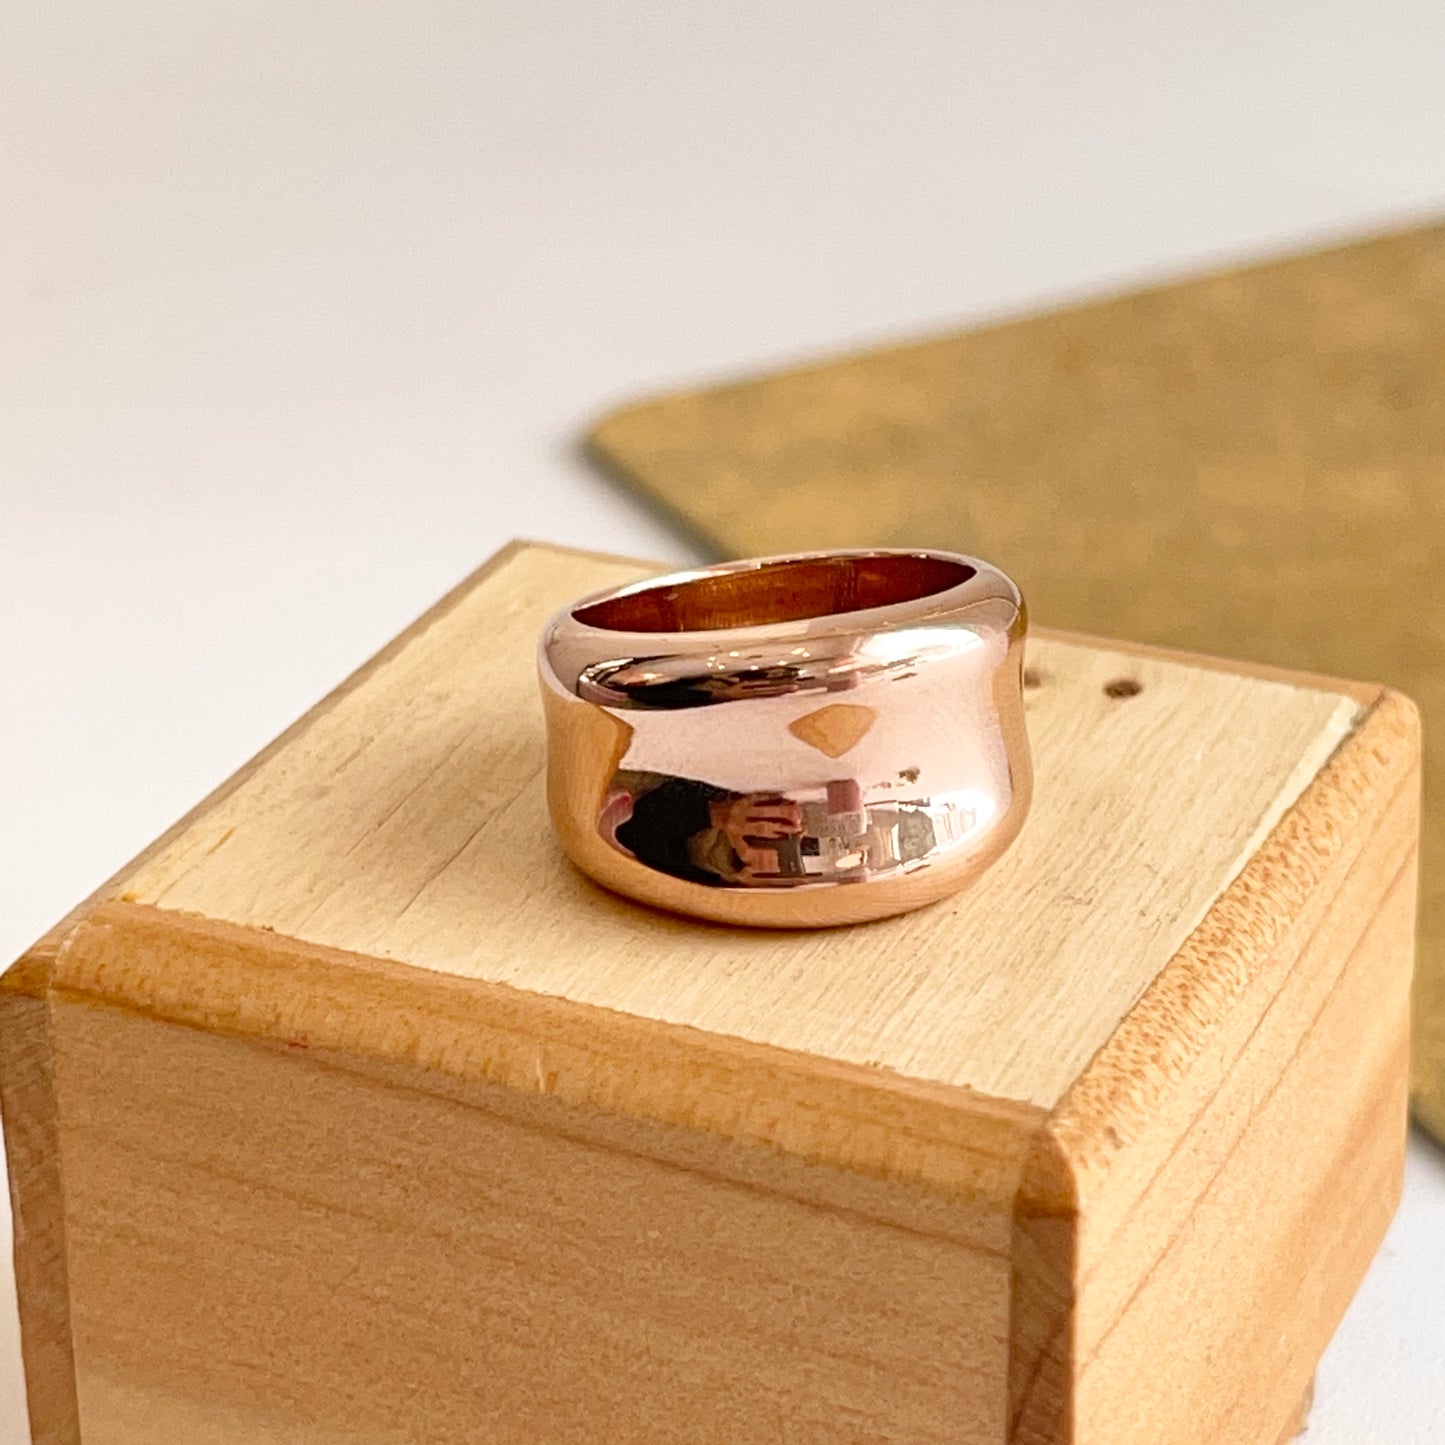 14KT Rose Gold Polished Concave Cigar Band Ring